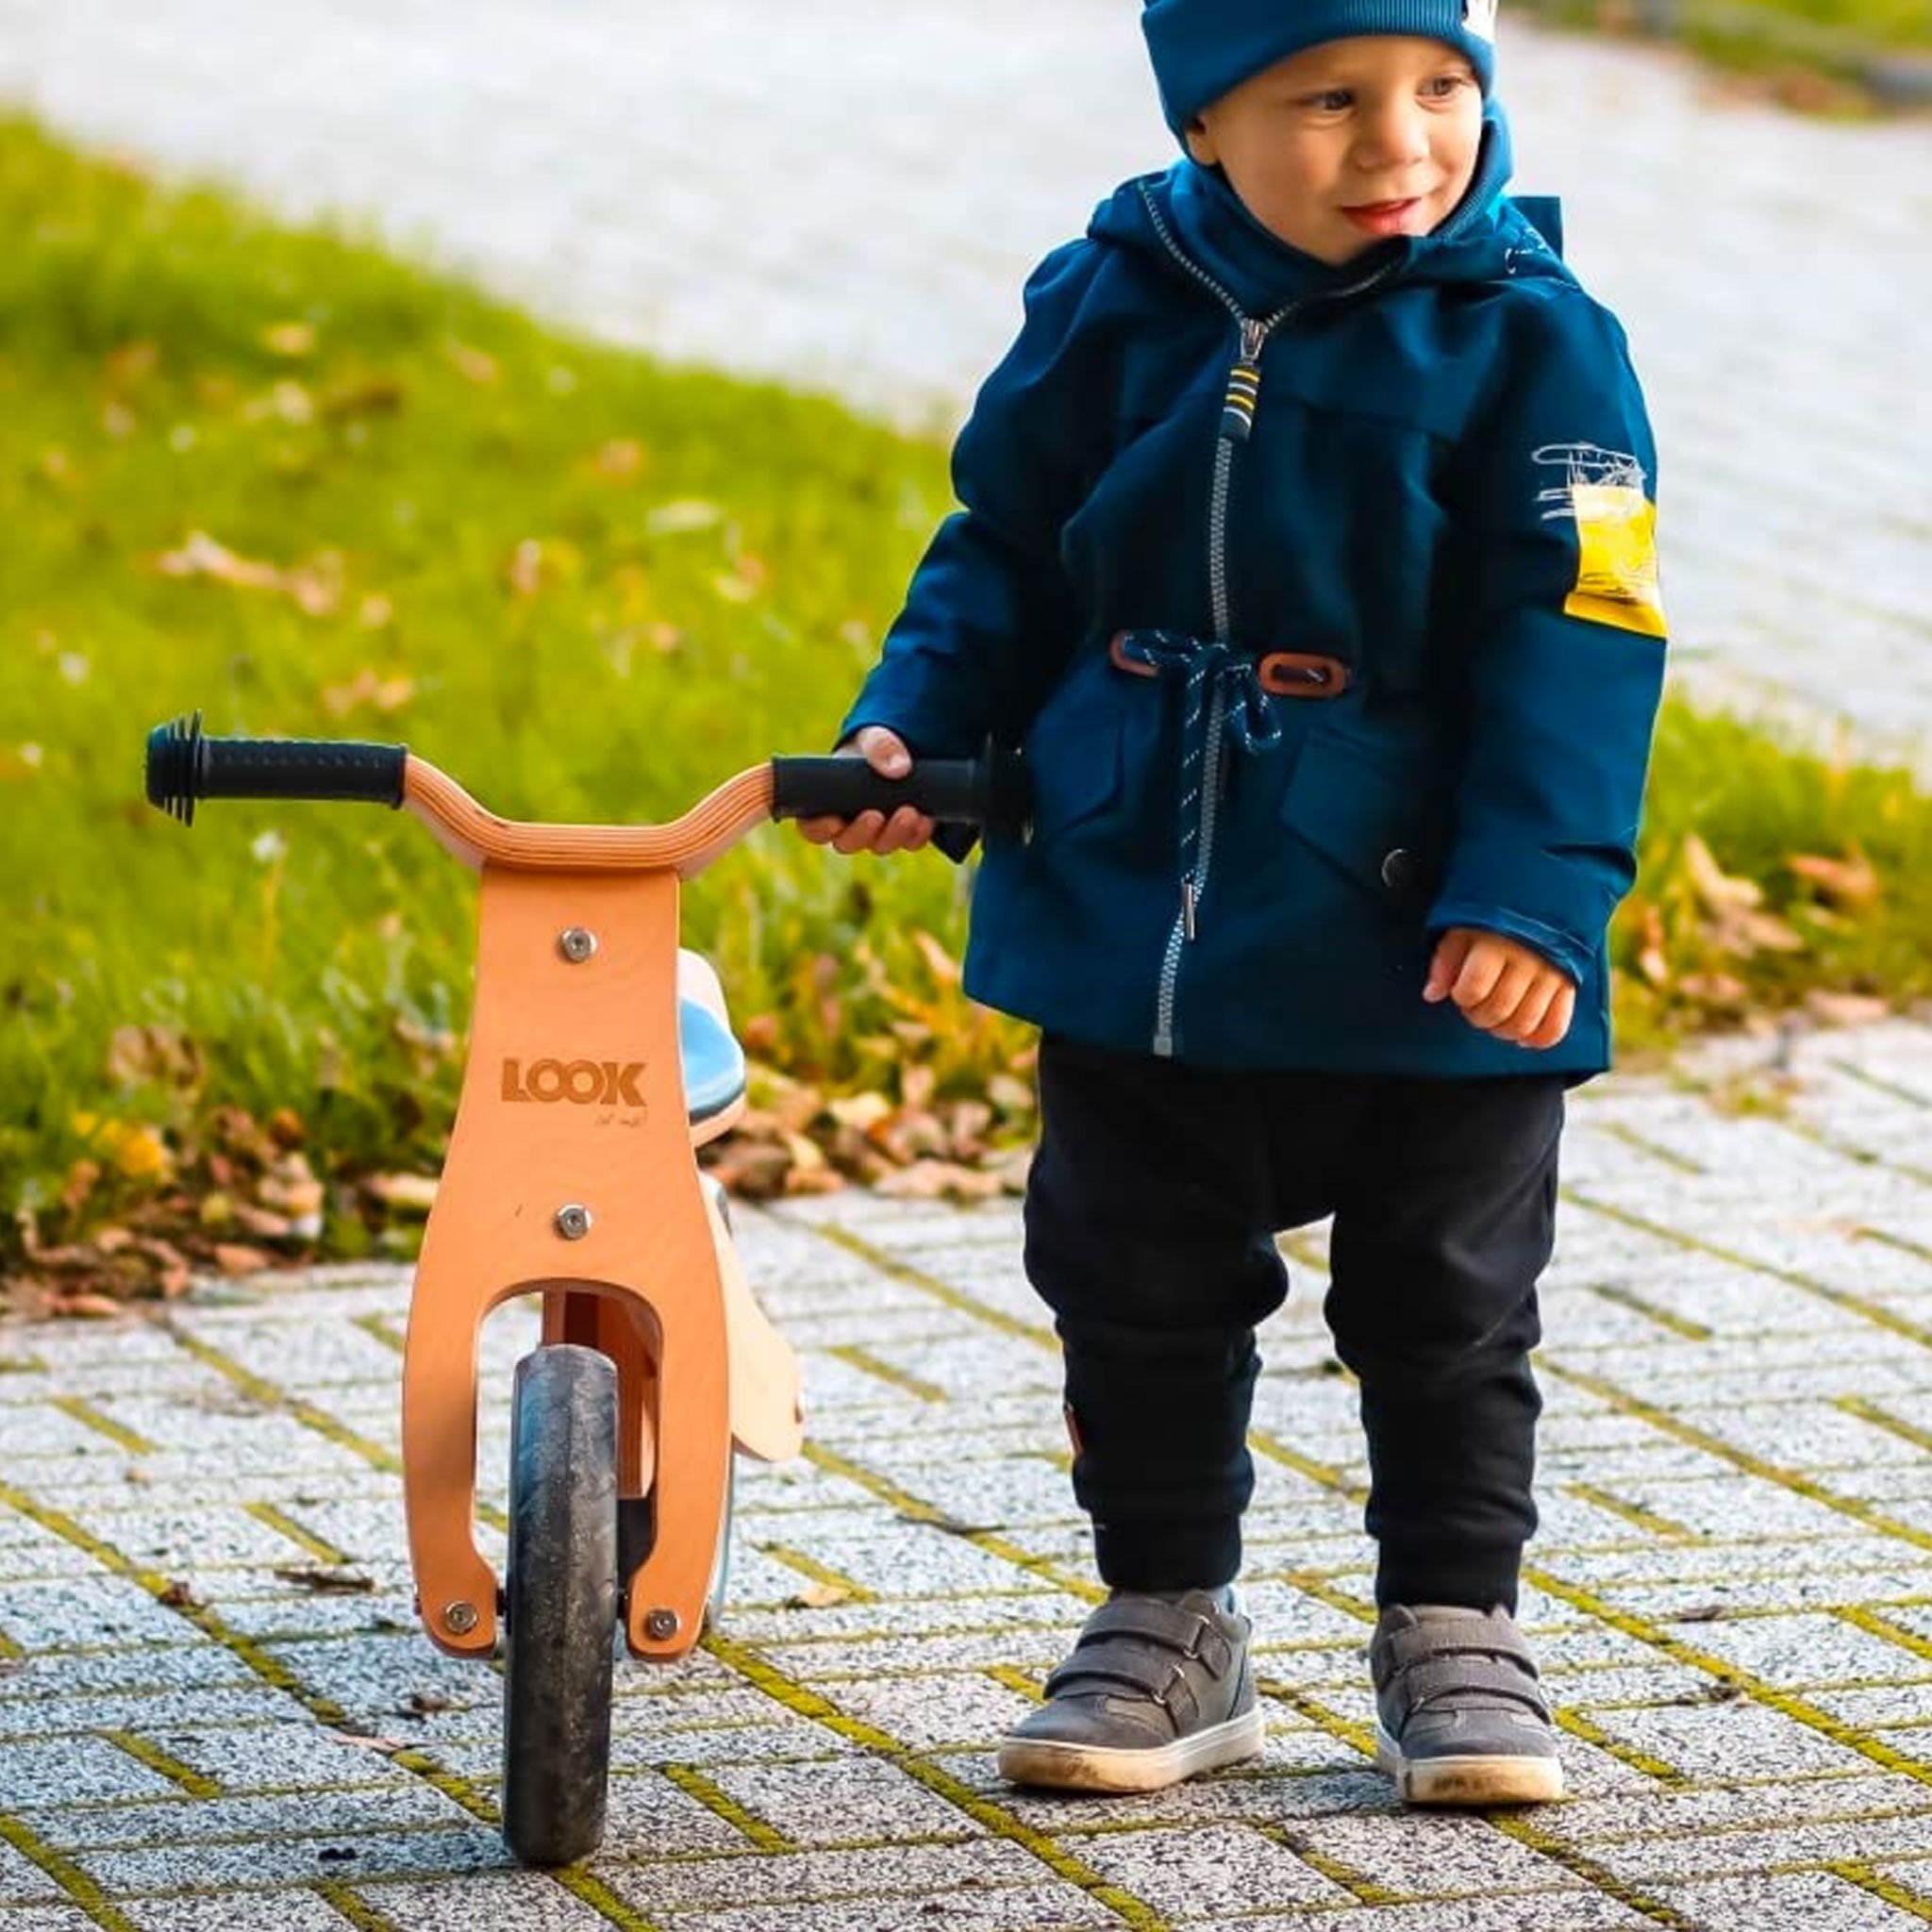 PM2770-triciclo-legno-cavalcabile-ruote-bici-senza-pedali-bambini-equilibrio-balance-bike-giochi-esterno-mobilita-crescita-legno-betulla-all-terrain-trasforma.jpg